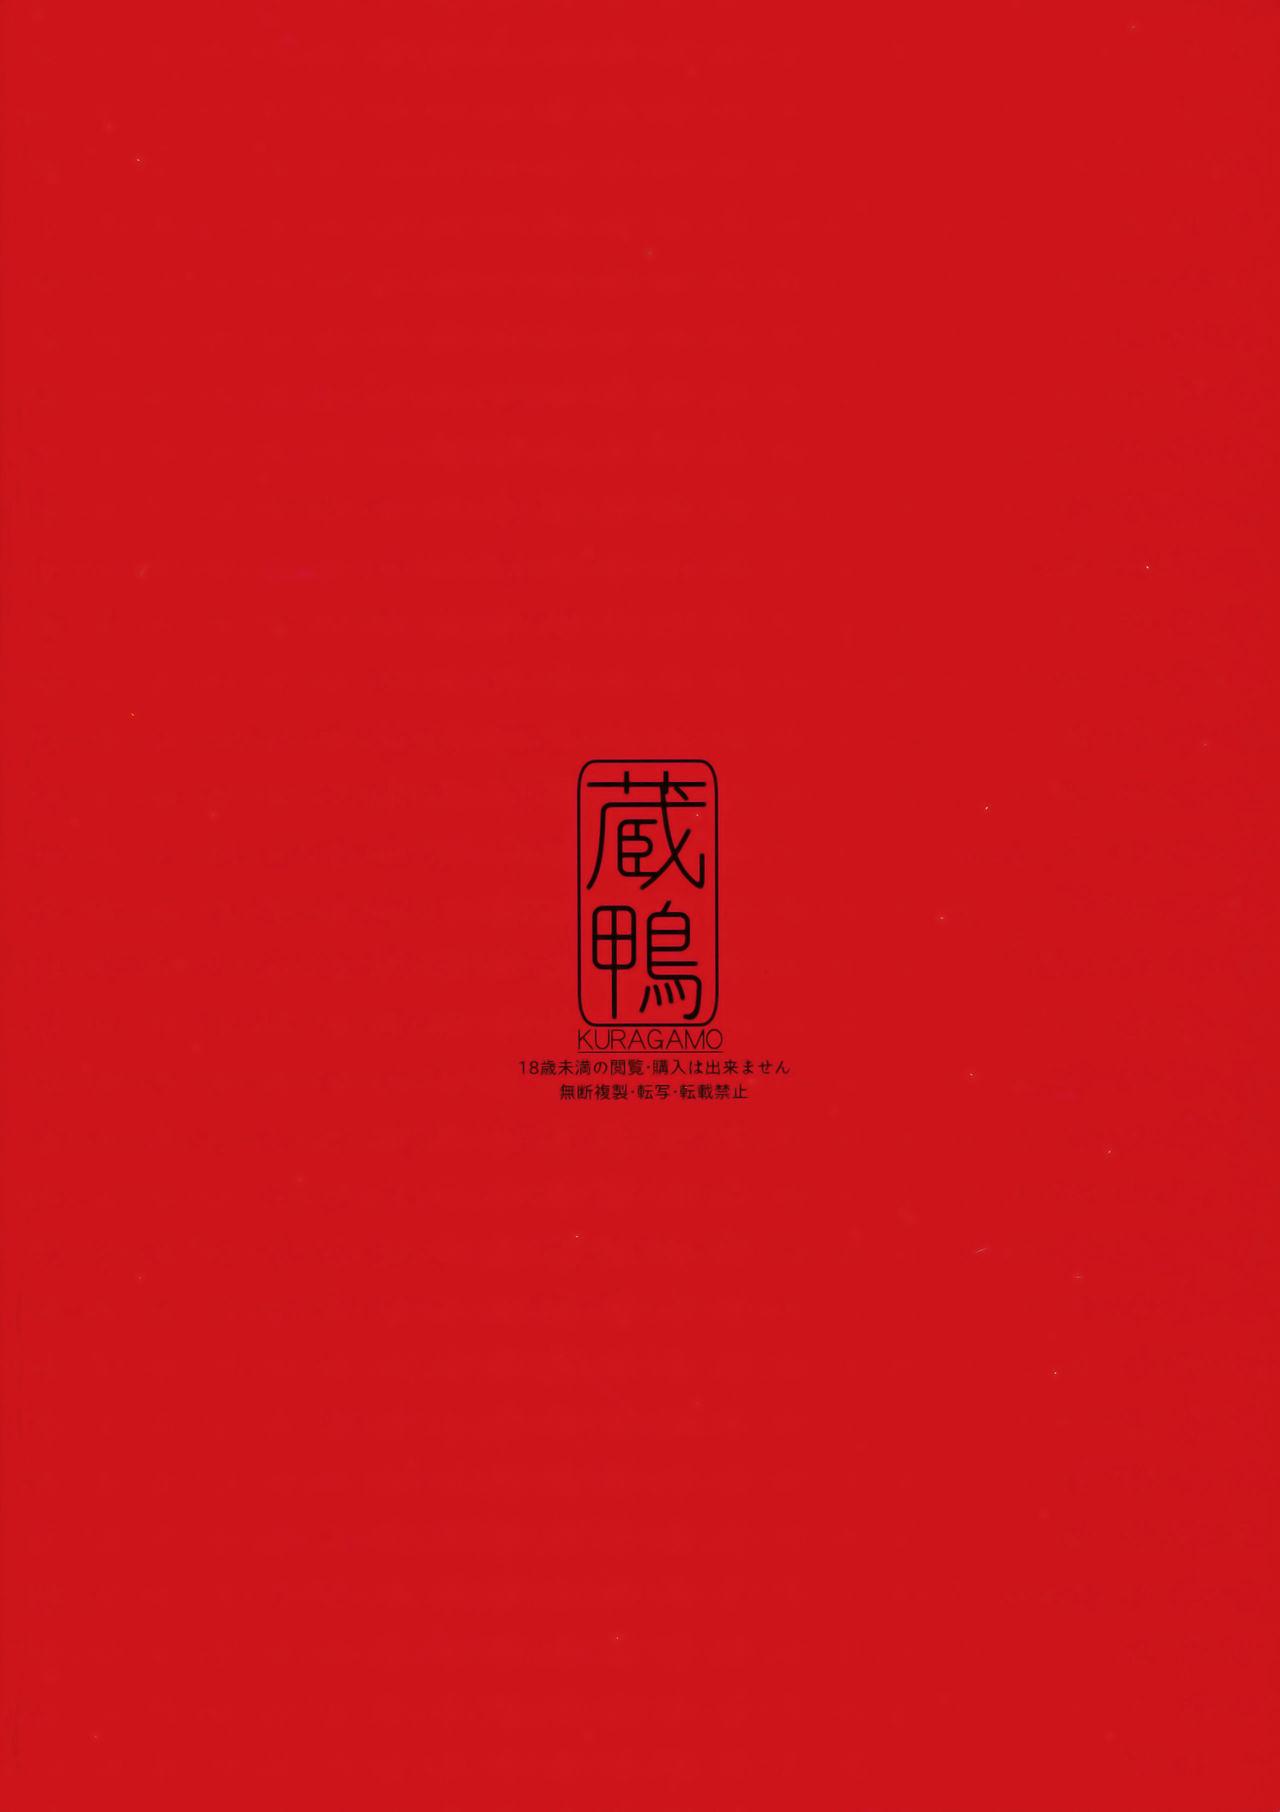 SHITSUKE IROIRO(C91) [蔵鴨 (月ノ輪ガモ)]  [中国翻訳](26页)